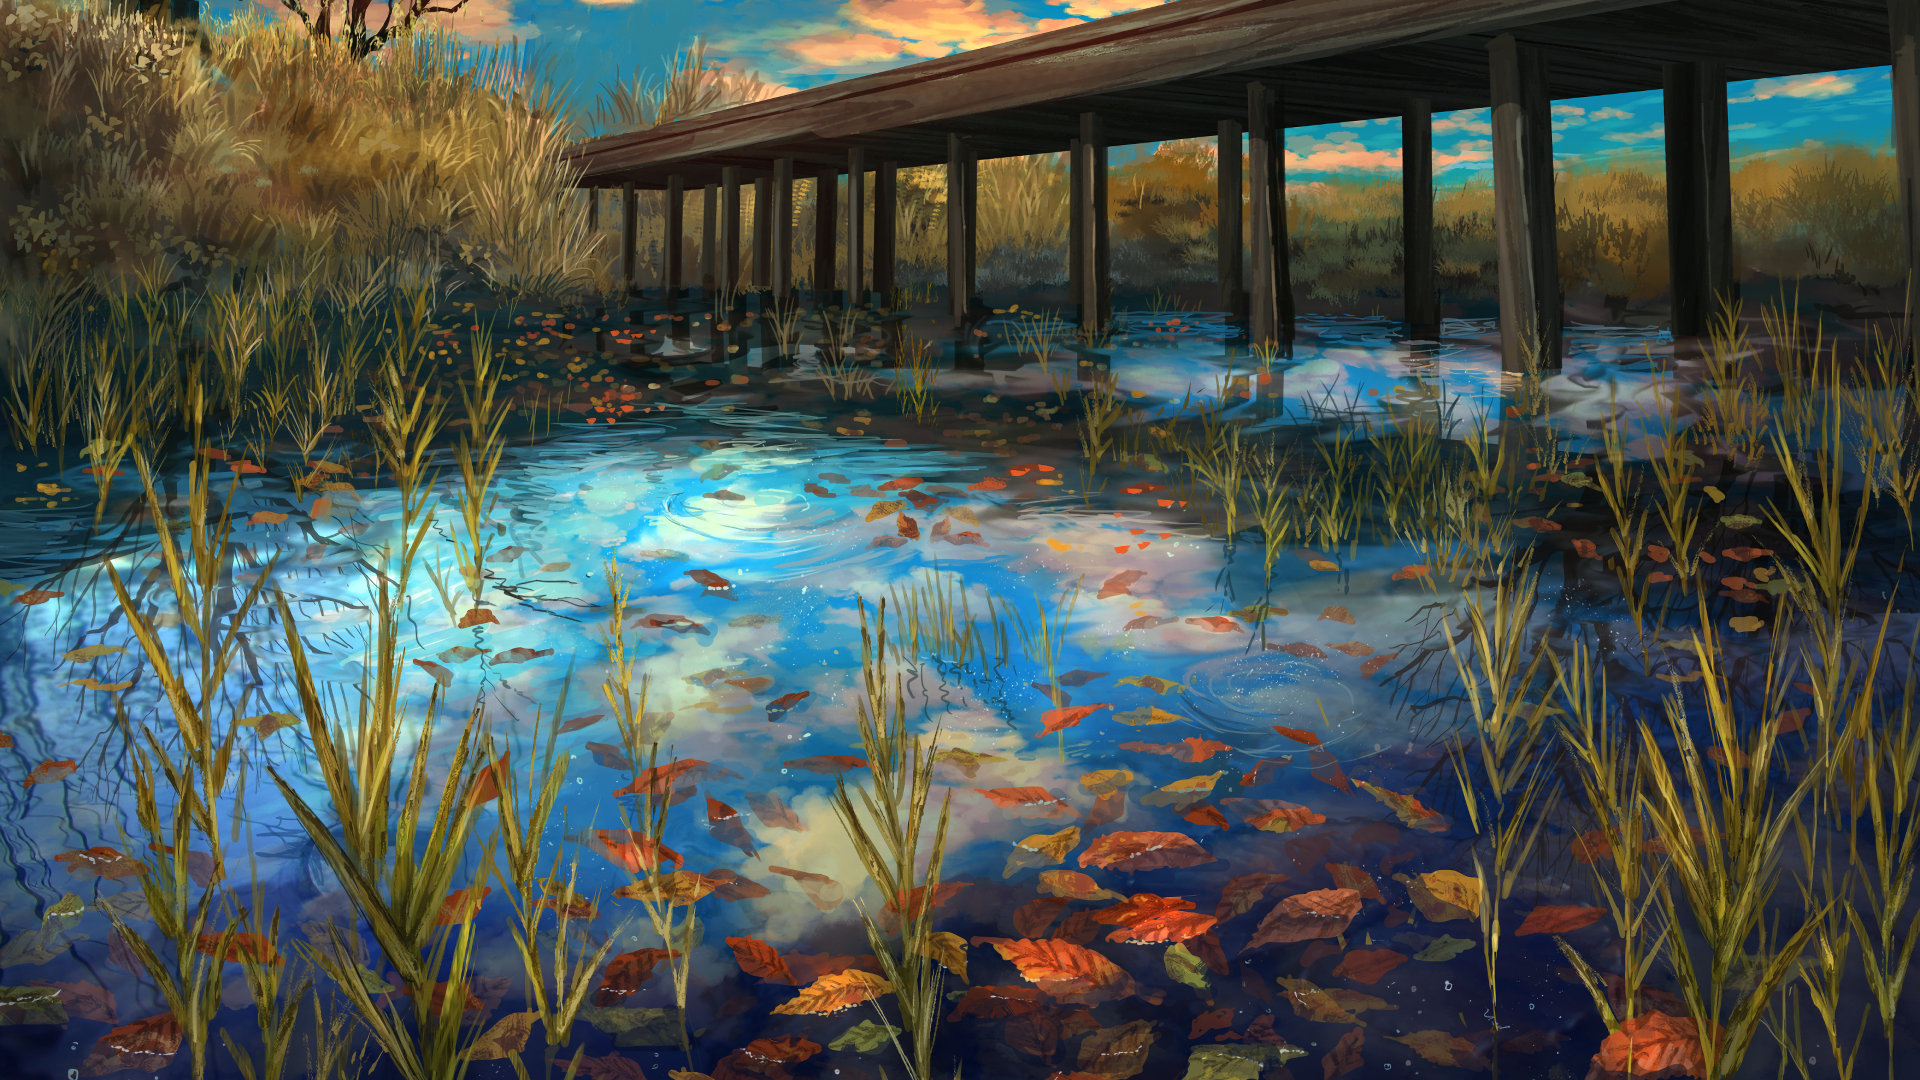 Download 1920x1080 Anime Landscape, River, Bridge, Autumn, Scenic Wallpaper for Widescreen